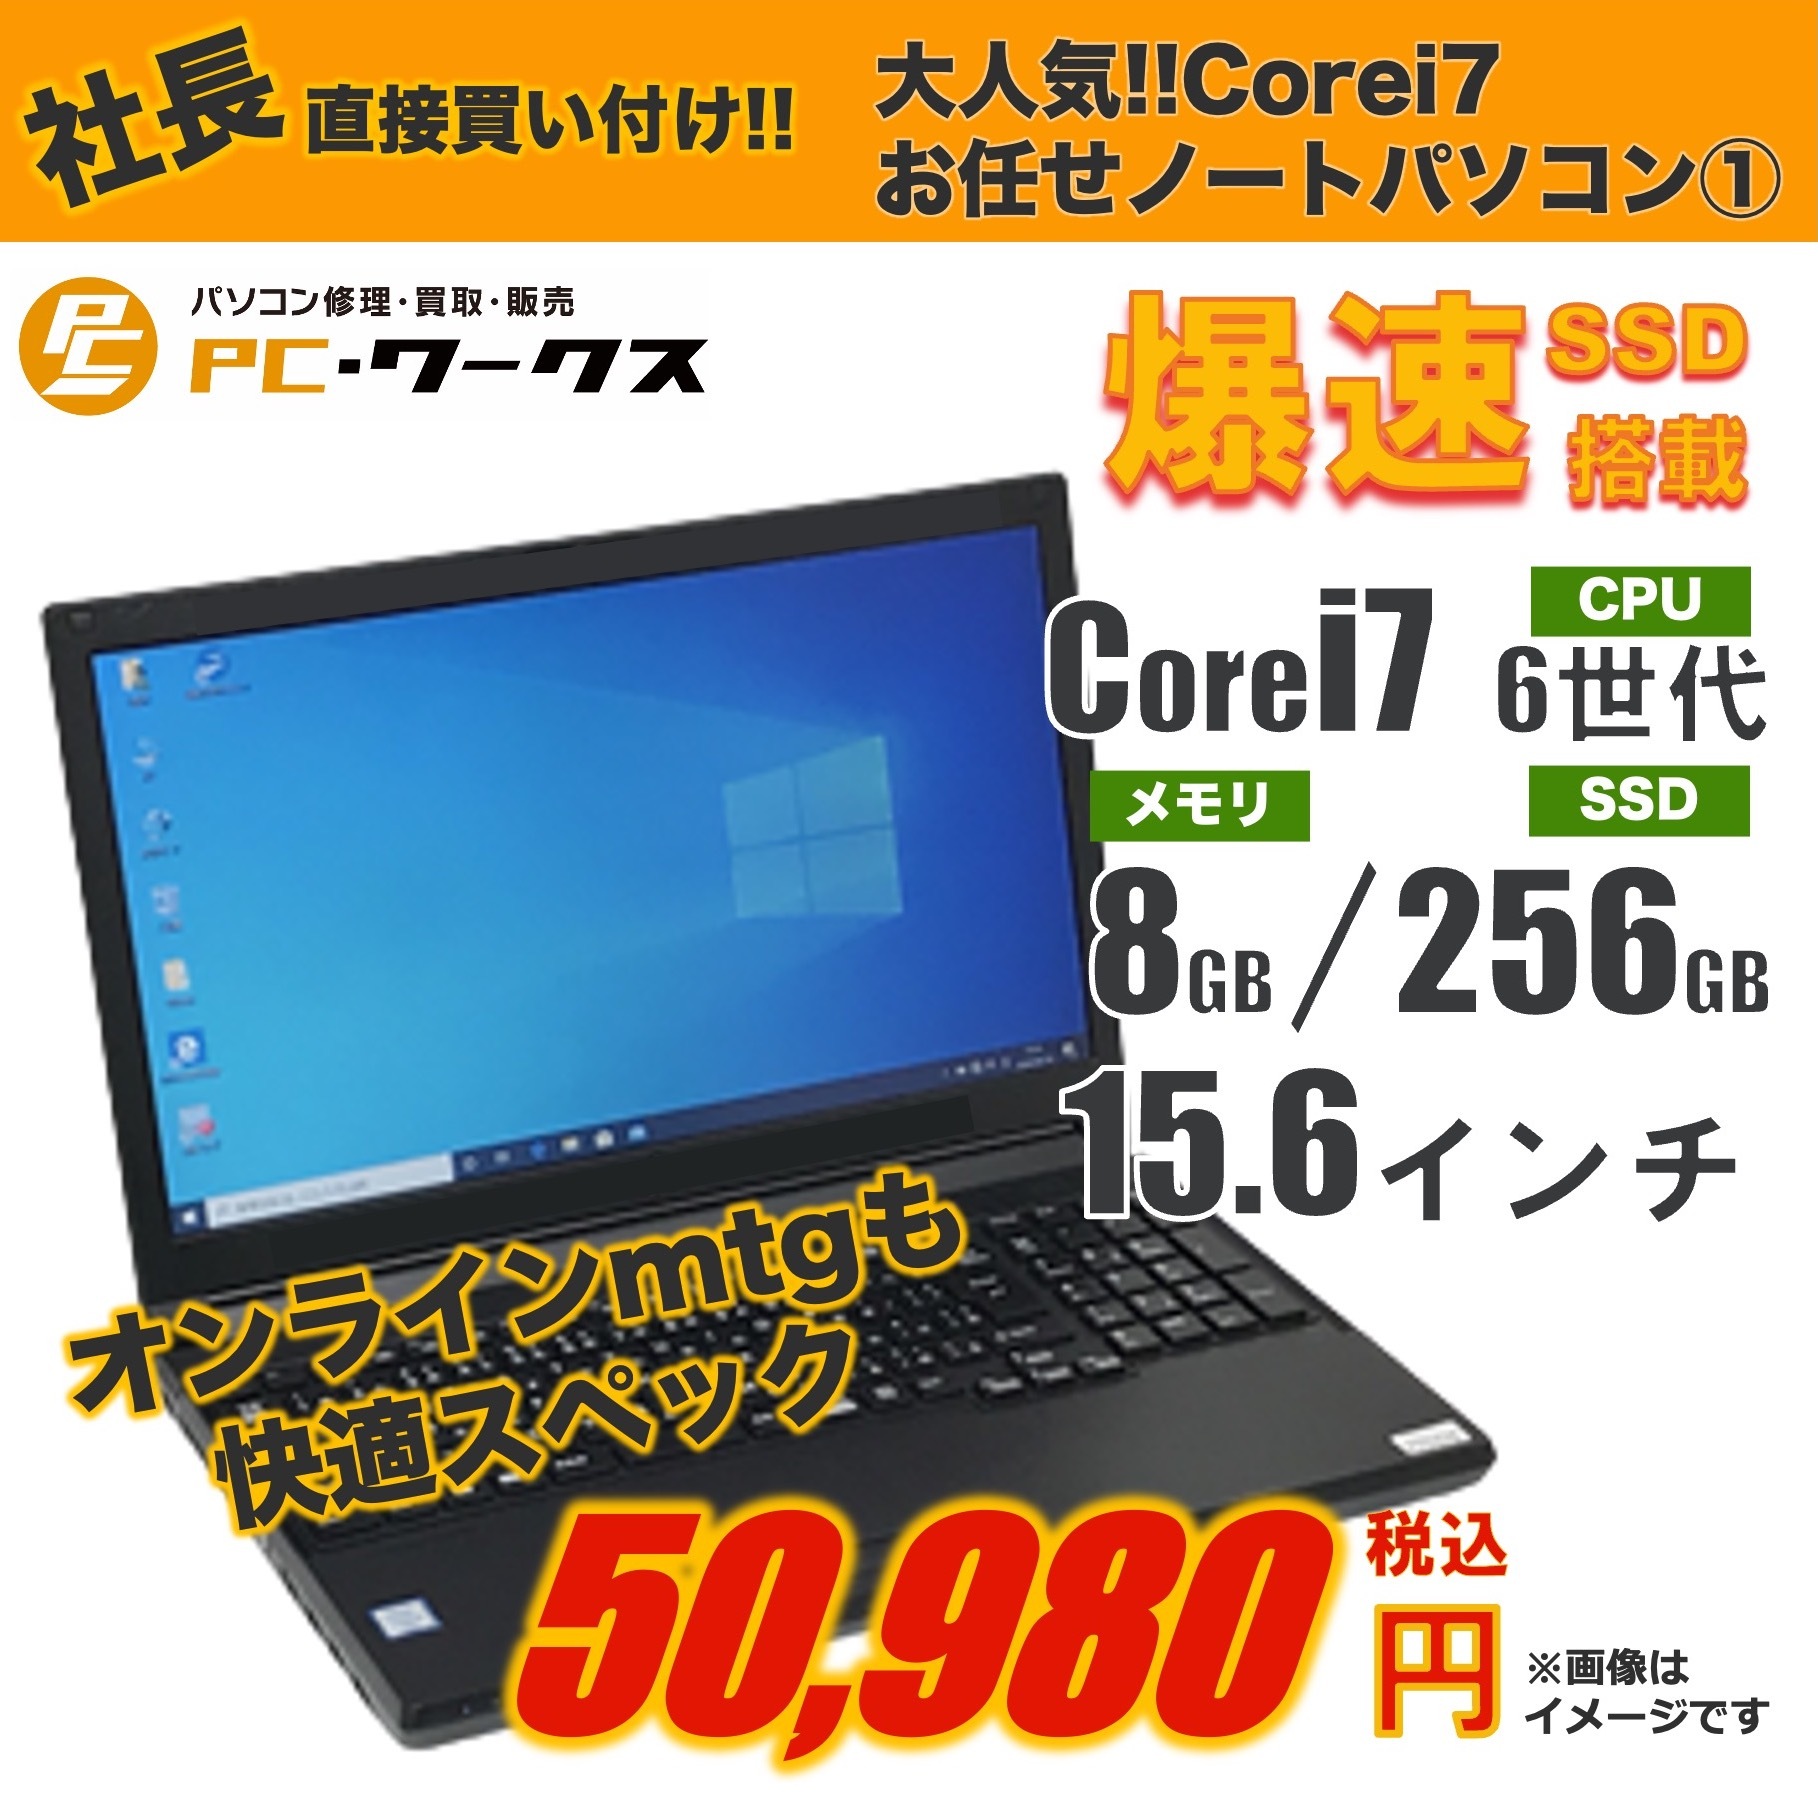 大人気 Corei7 お任せノートパソコン①15.6inch